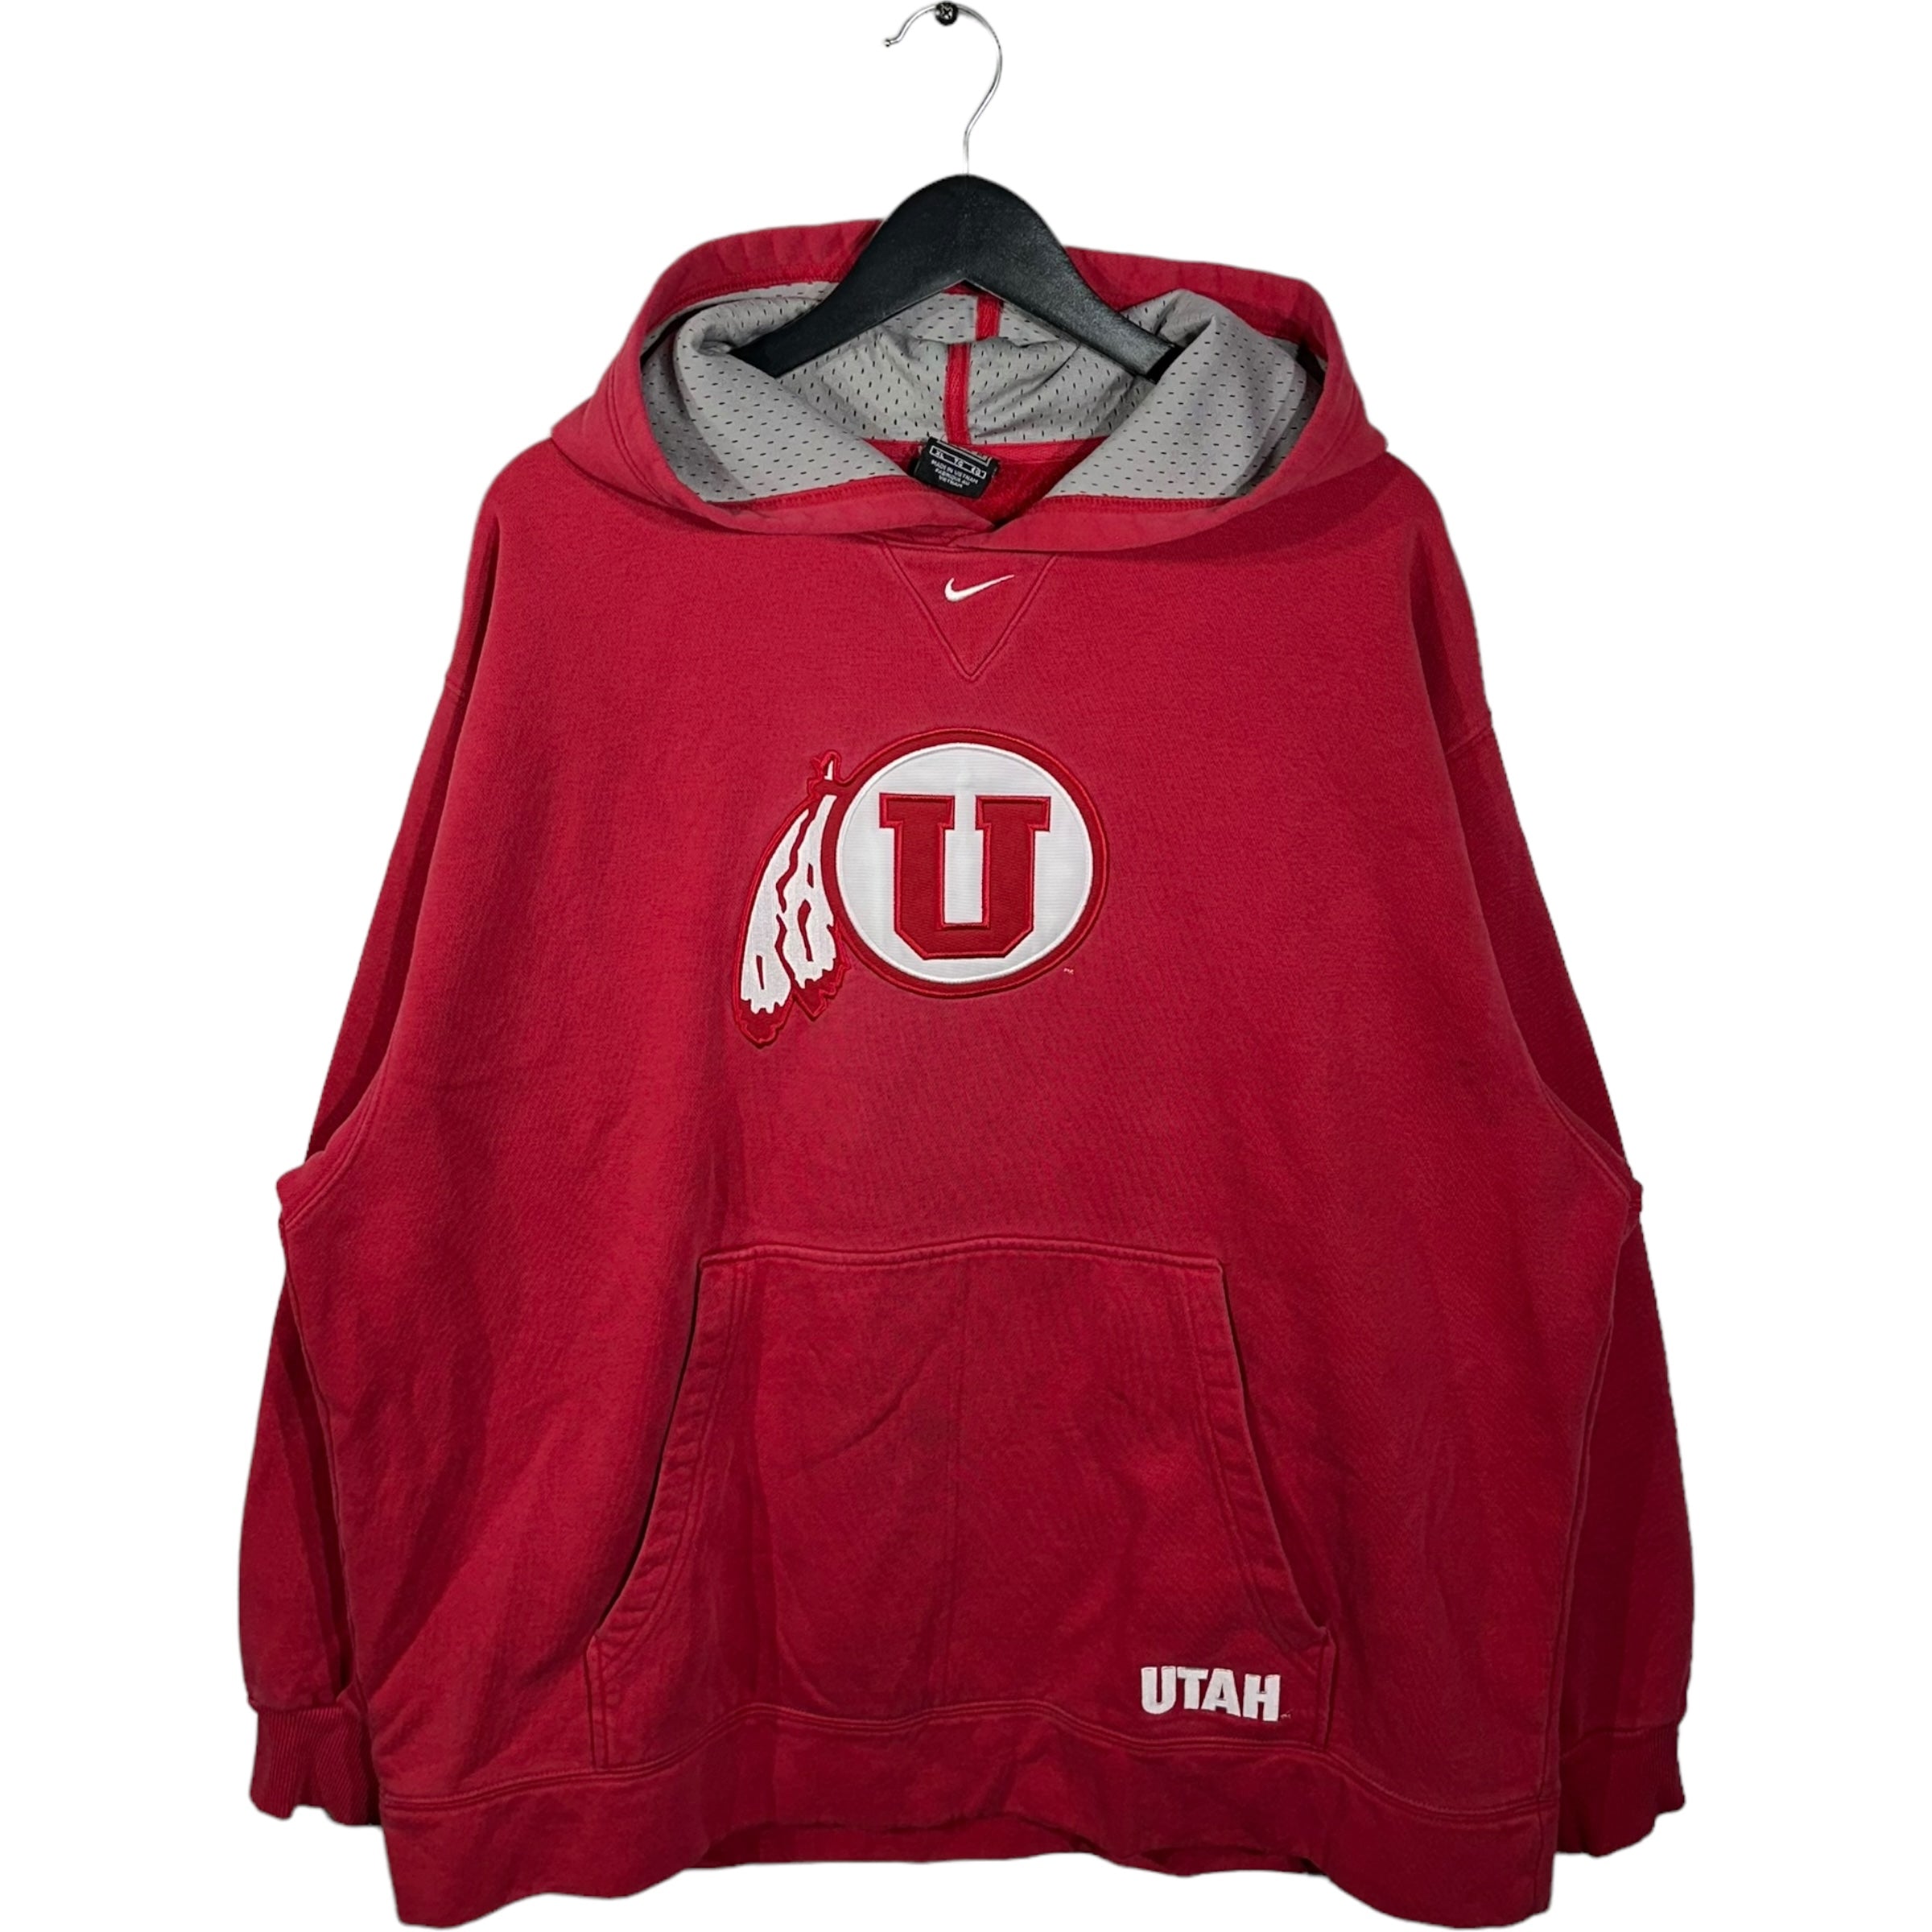 Vintage Utah University Nike Center Swoosh Hoodie